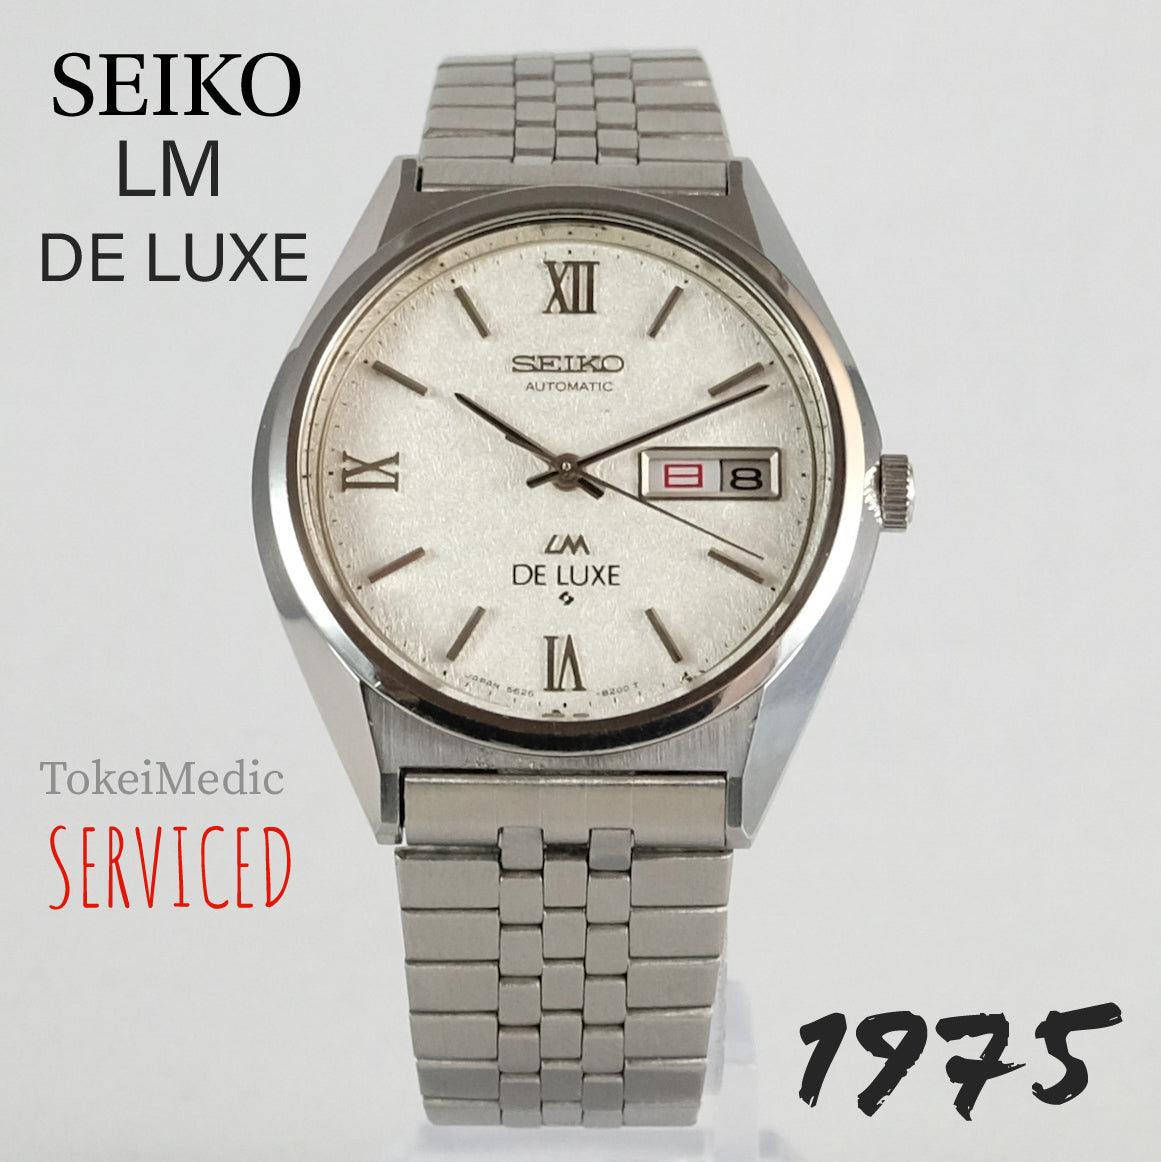 1975 Seiko LM De Luxe 5626-8160